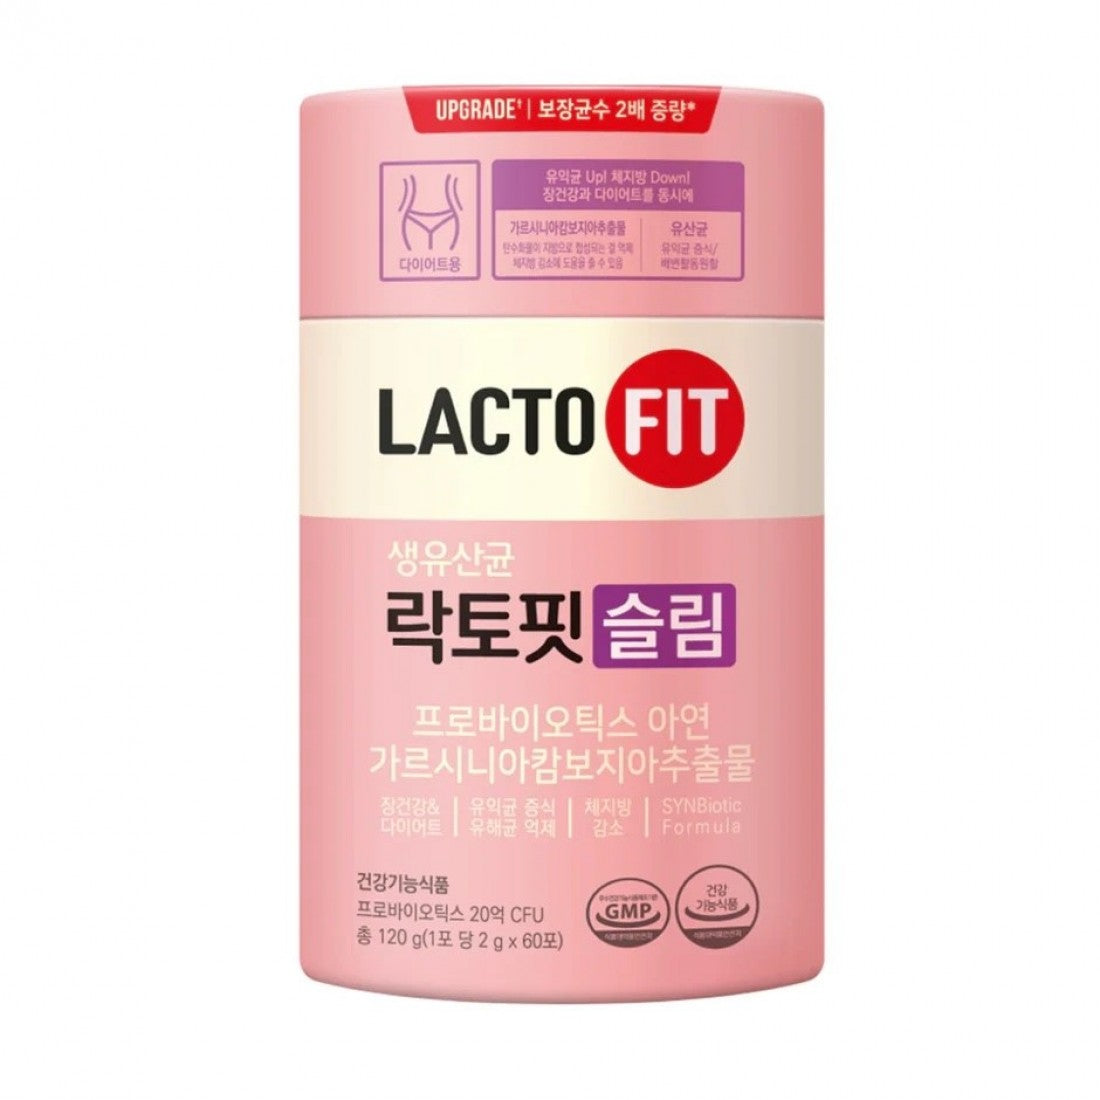 韓國銷量No.1 Lacto-fit Slim 藤黃果益生菌針對纖體瘦身功效 2g x 60